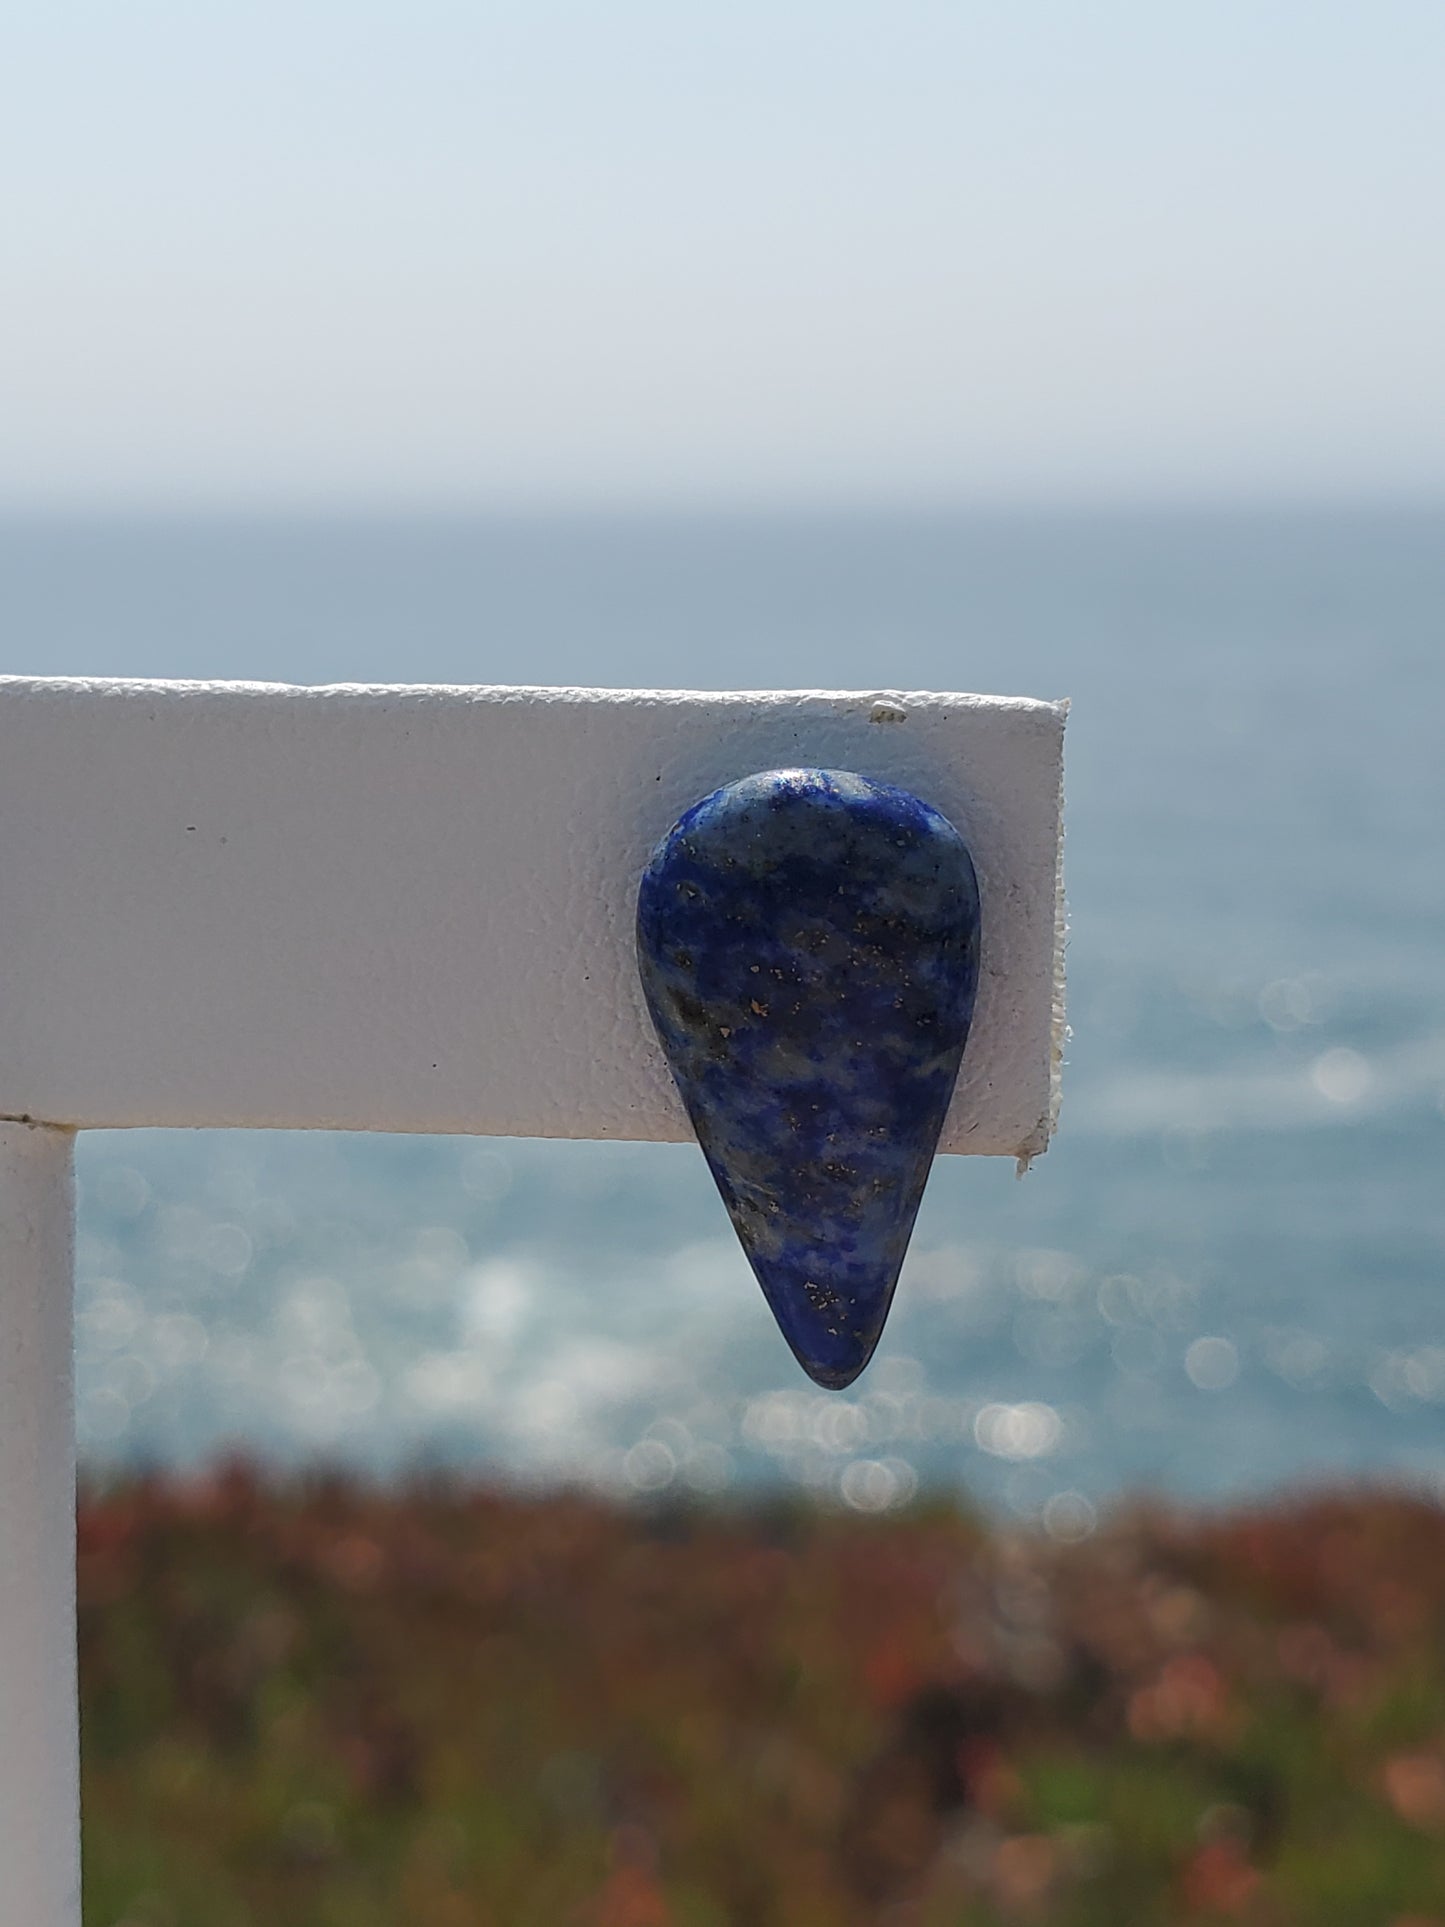 Lapis Lazuli Teardrop Stud Earrings